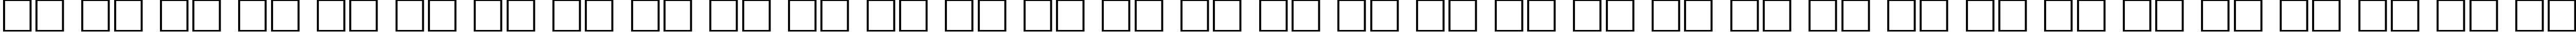 Пример написания русского алфавита шрифтом School Plain:001.001110n